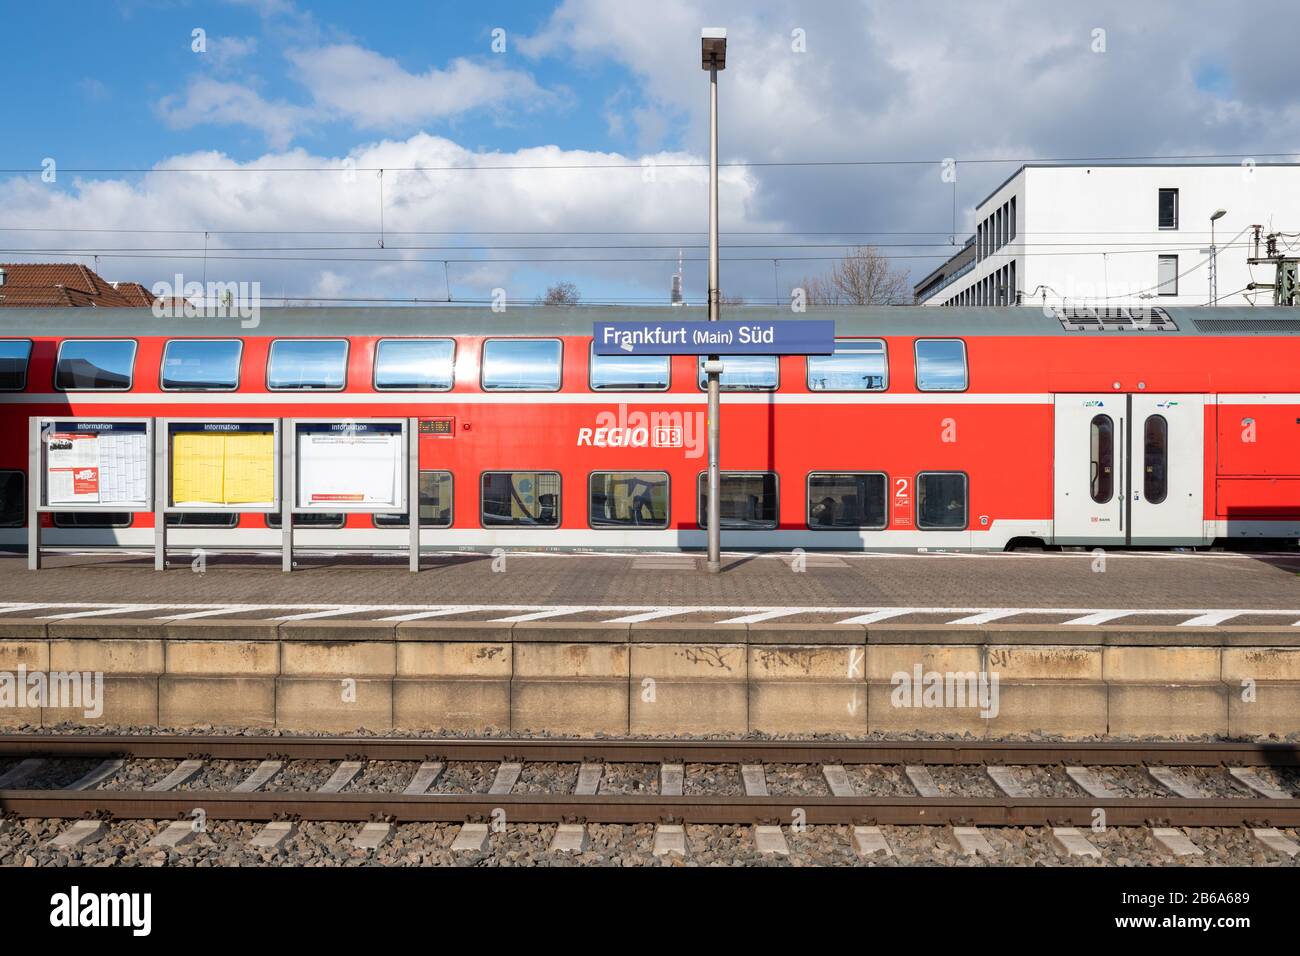 Deutsche Bahn DB Regio train at Frankfurt Main Sud platform, Frankfurt, Germany Stock Photo